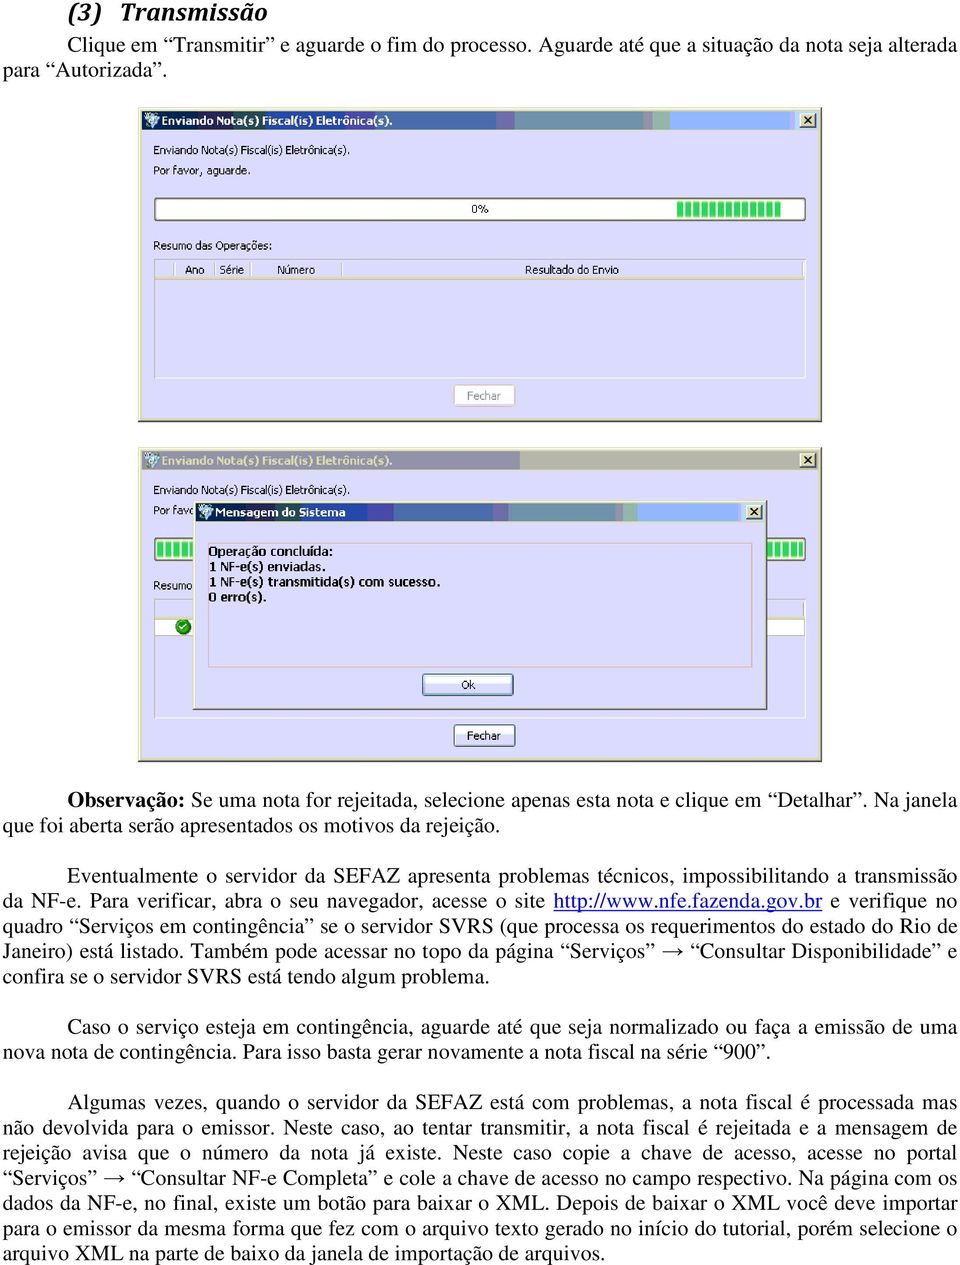 Eventualmente o servidor da SEFAZ apresenta problemas técnicos, impossibilitando a transmissão da NF-e. Para verificar, abra o seu navegador, acesse o site http://www.nfe.fazenda.gov.